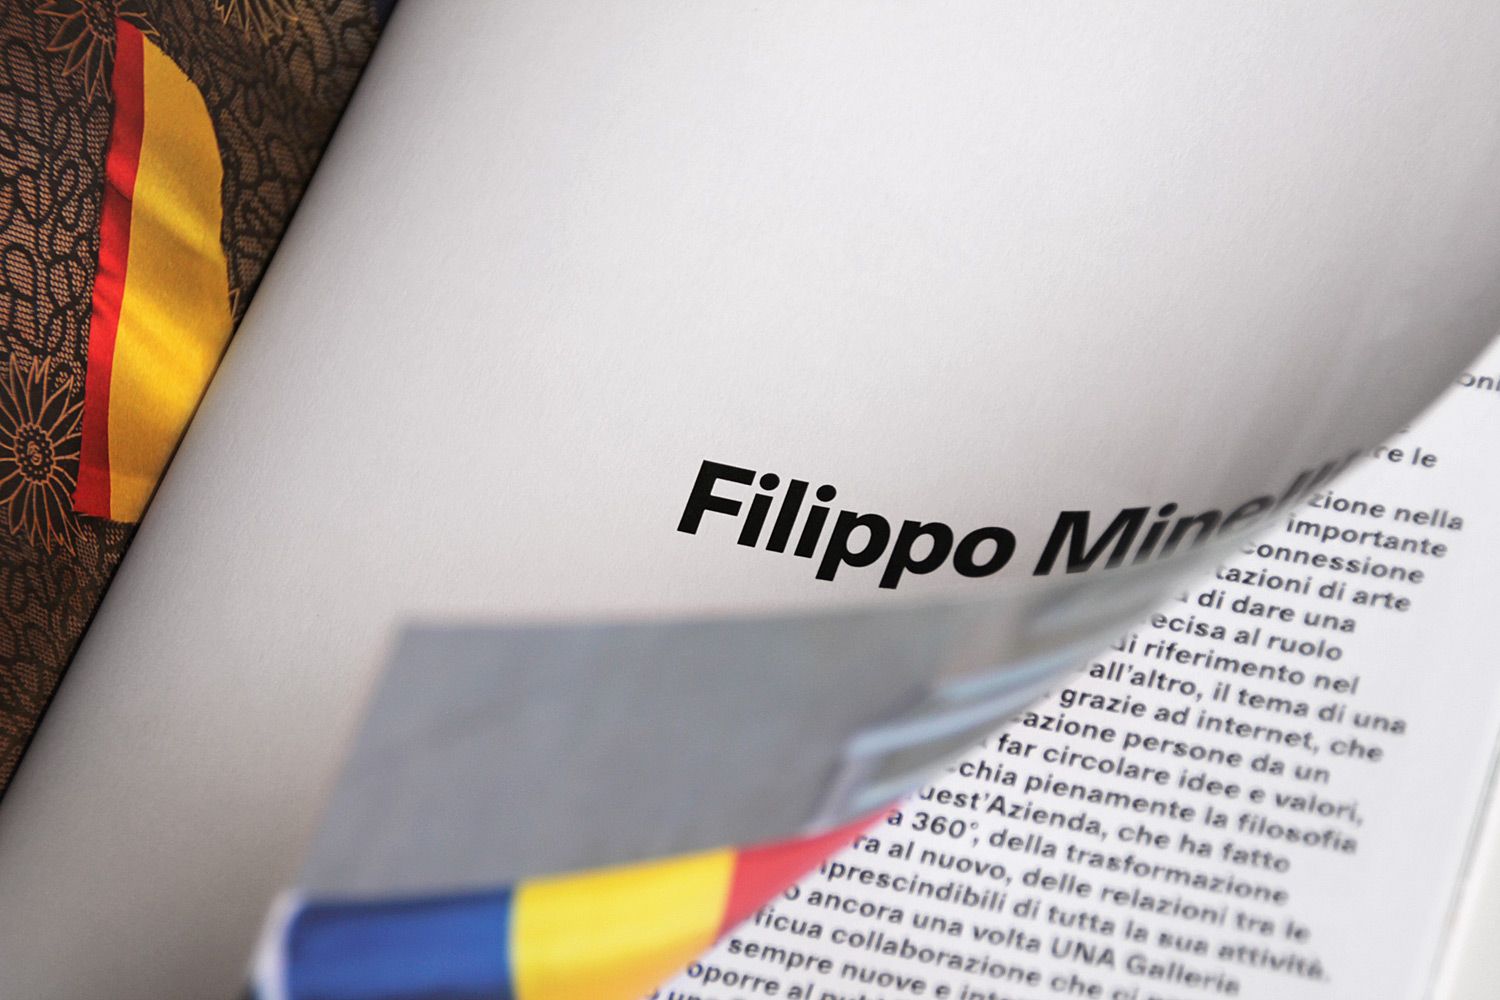 filippo minelli across the border